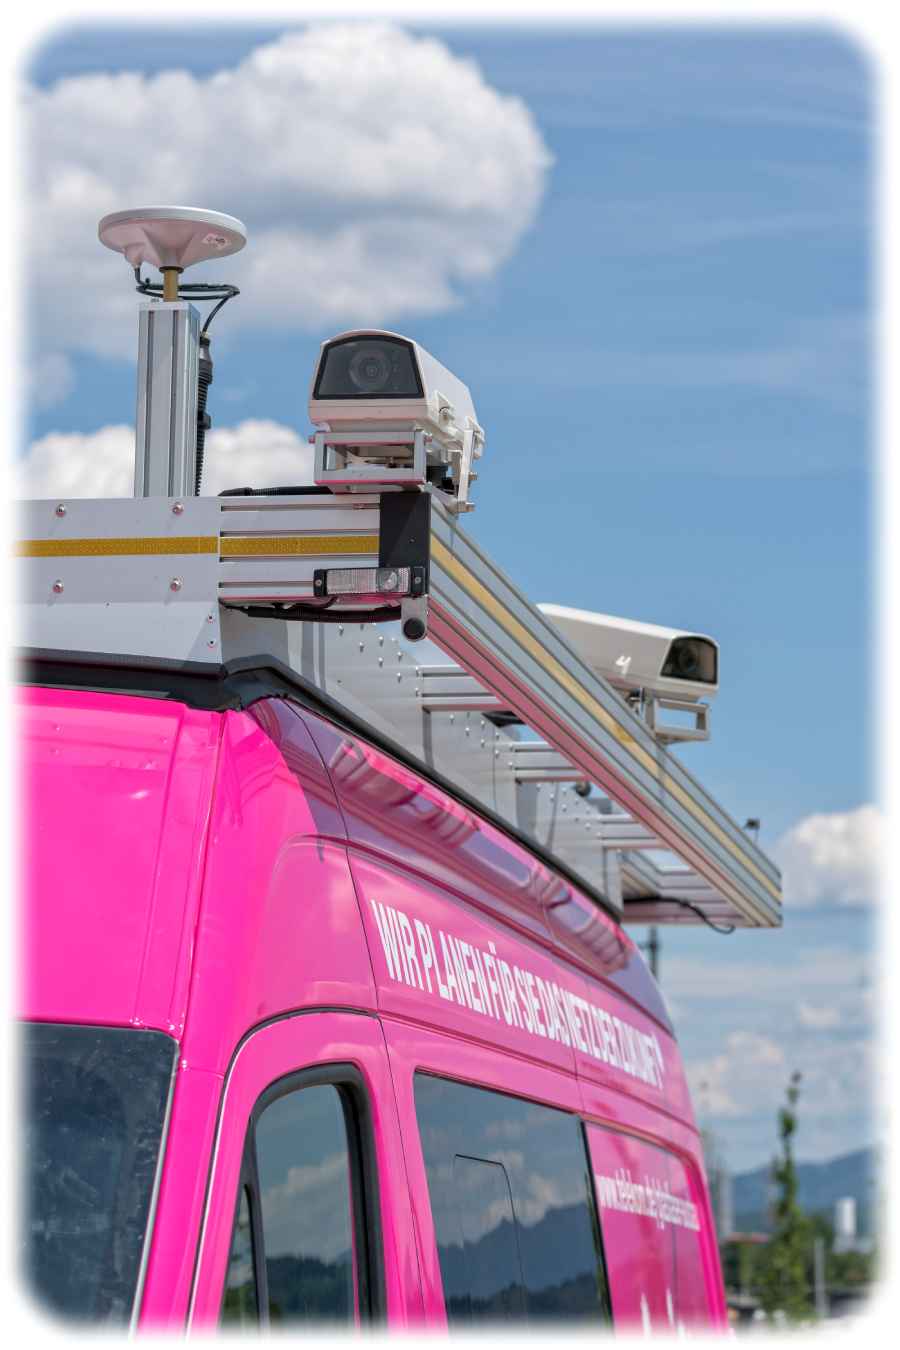 Mit dem "T-Car" sammelt die Telekom Bilder und andere Sensordaten vom Straßenverlauf. Foto: Deutsche Telekom